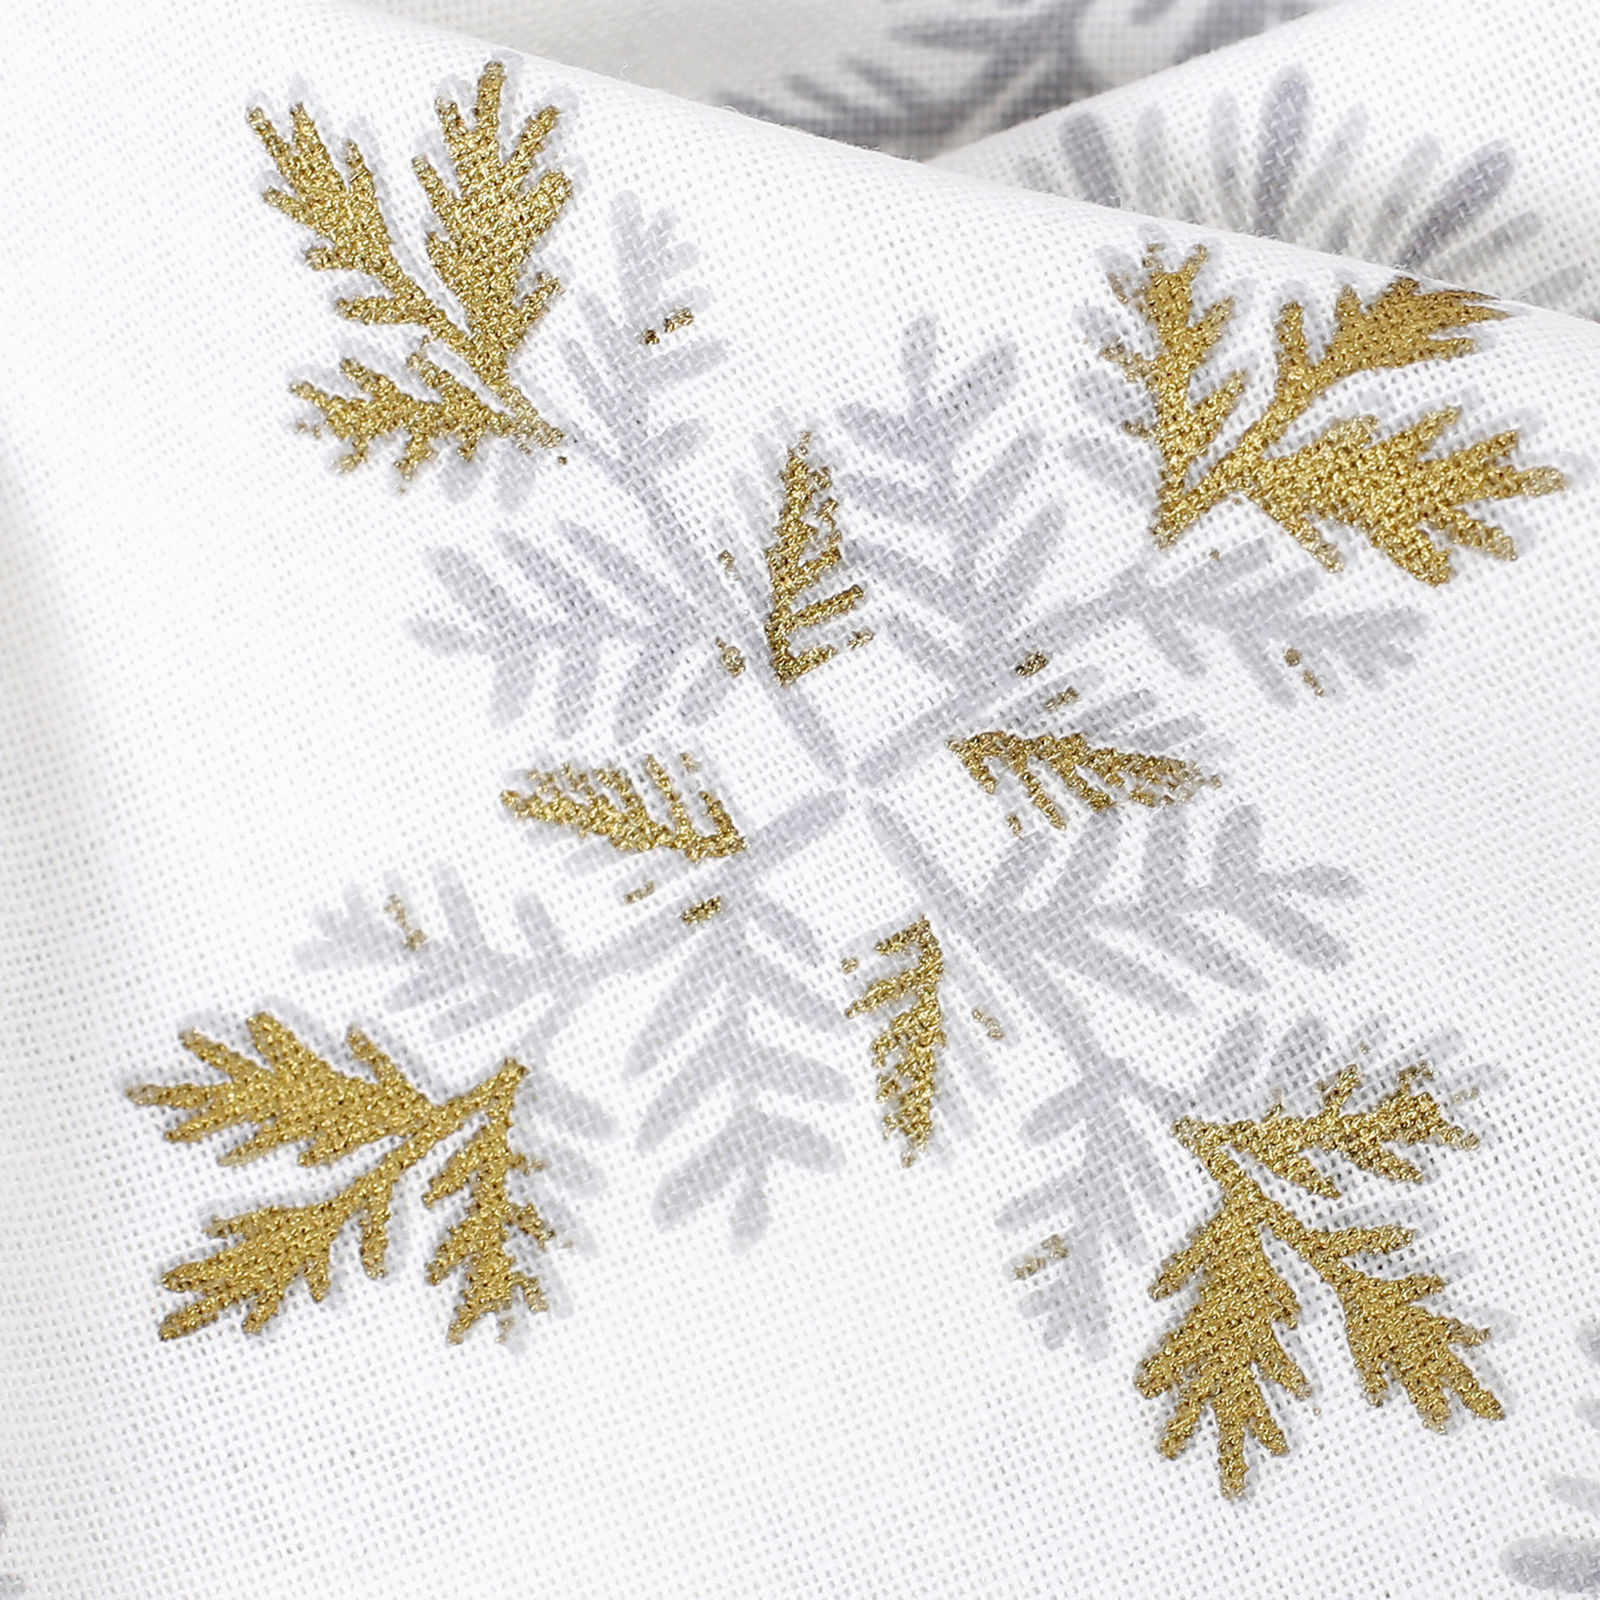 Ścierka kuchenna bawełniana świąteczna - szare płatki śniegu ze złotym brokatem na białym